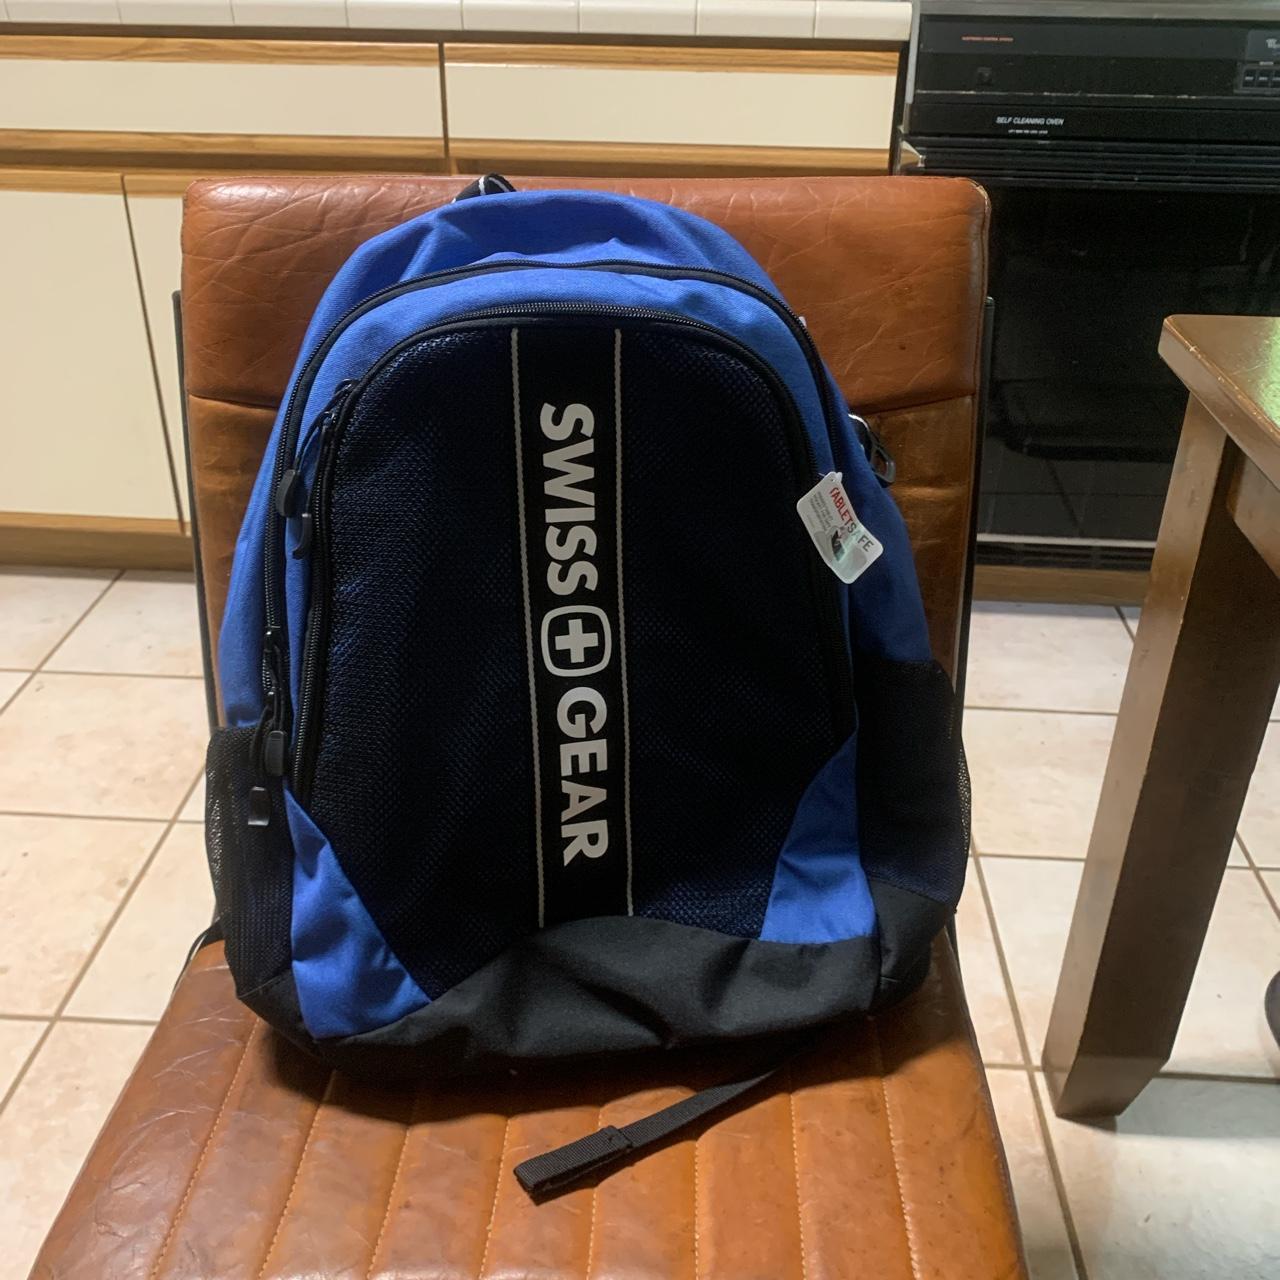 Blue Swiss Gear Backpack #blue#black#swissgear#backpack